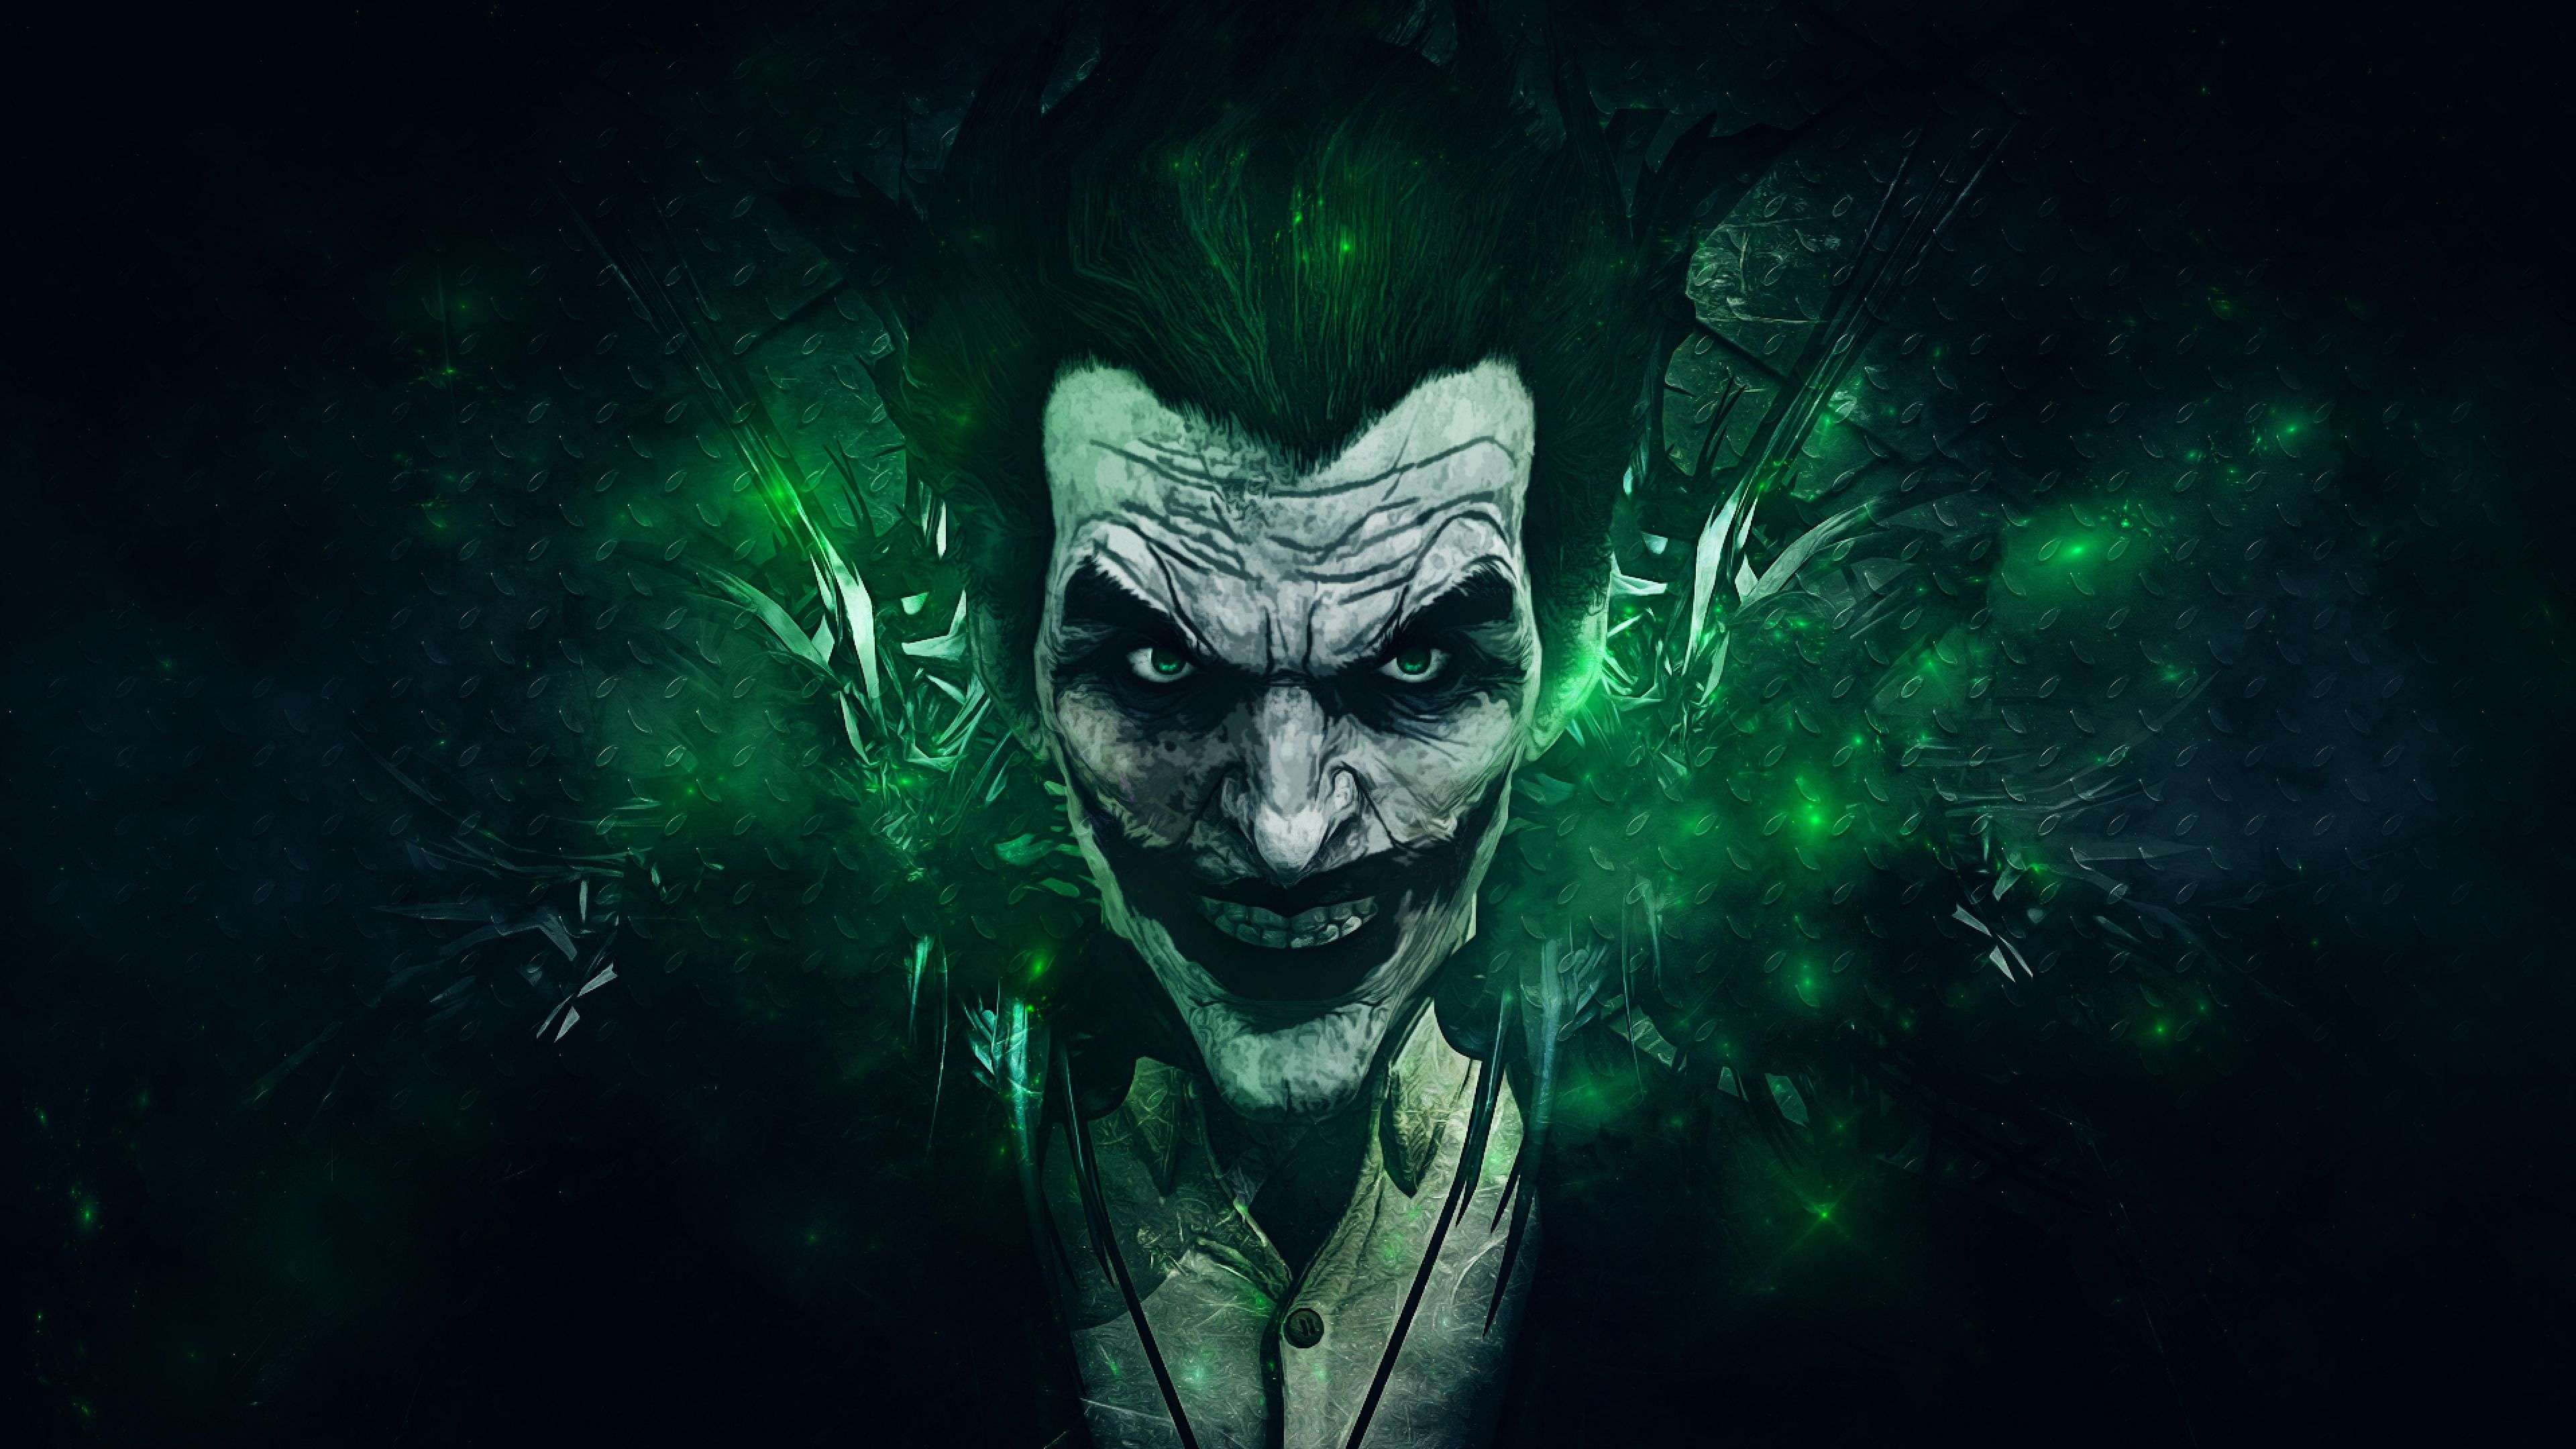 Batman Joker 4k Ultra HD Joker HD Wallpaper 4k Download